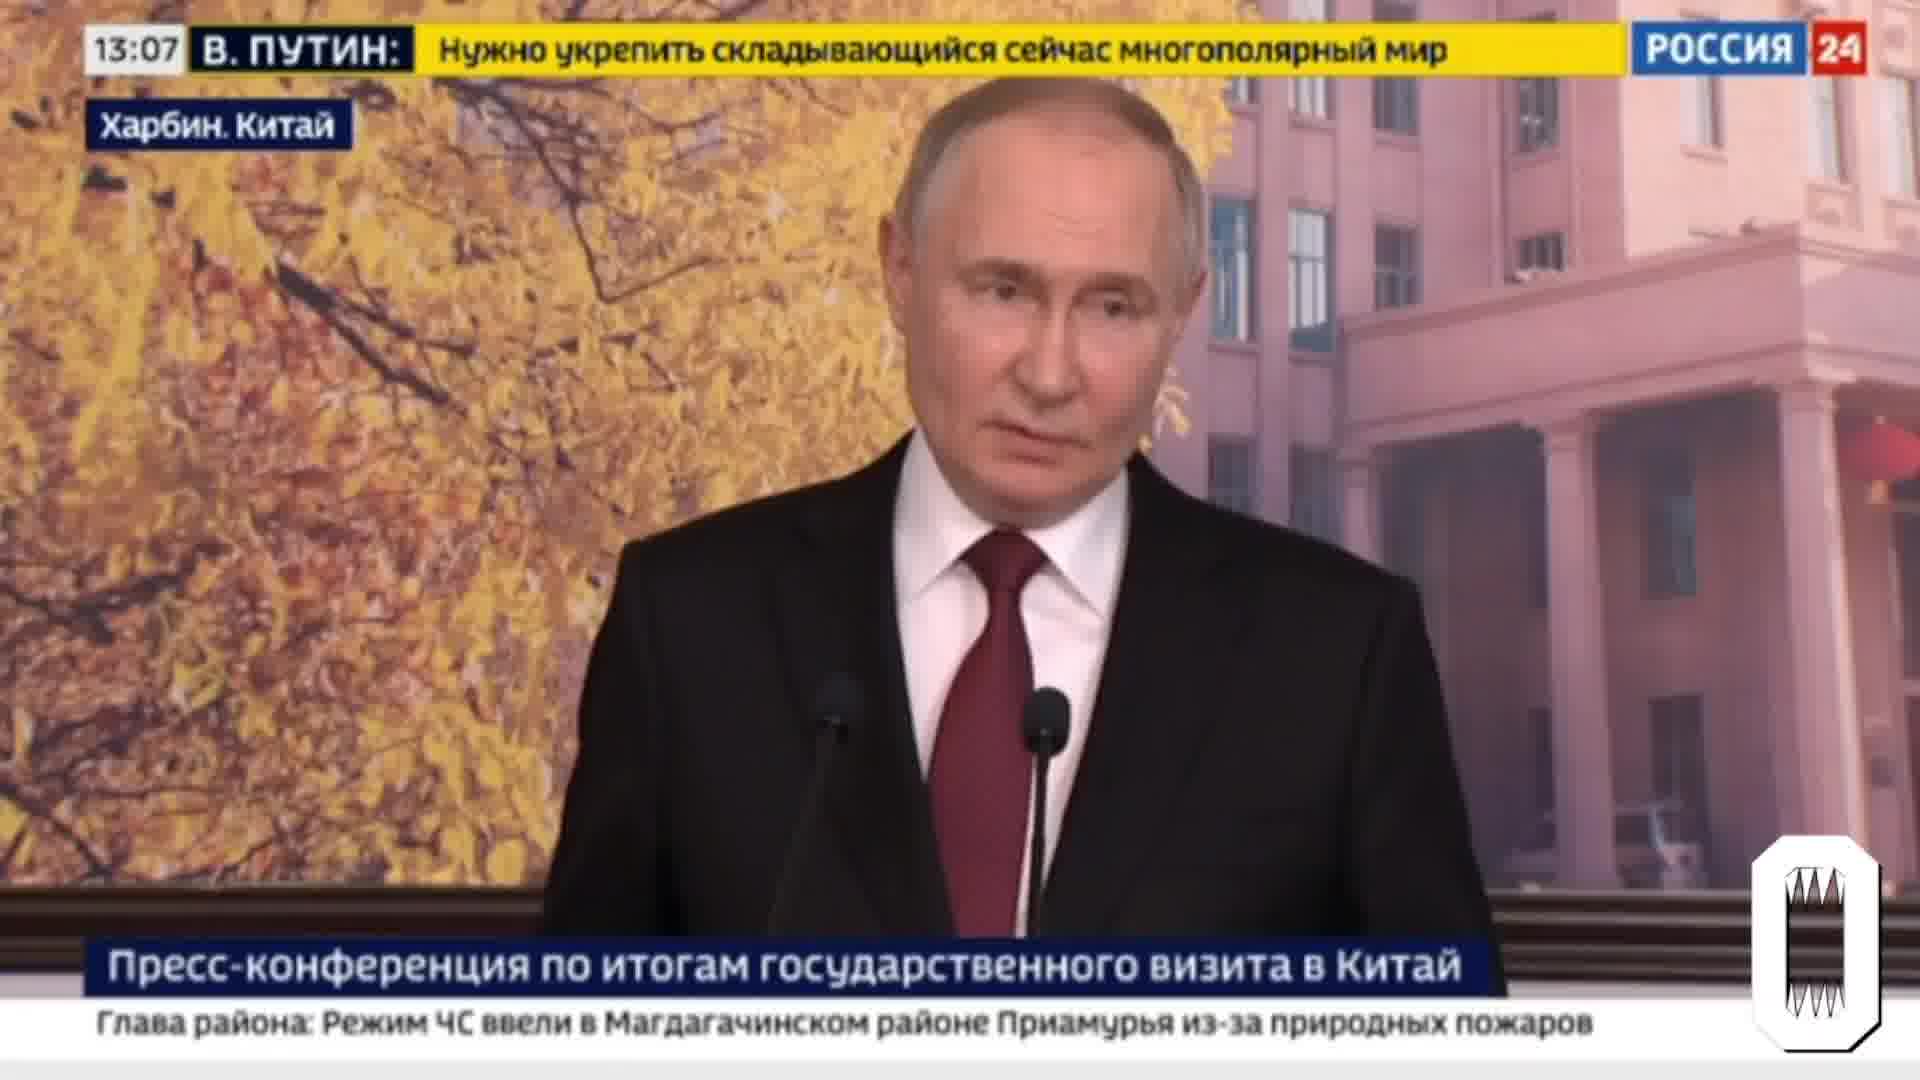 Putin afferma che l'esercito russo non ha l'ordine di catturare Kharkiv, le truppe stanno creando una zona sanitaria vicino al confine